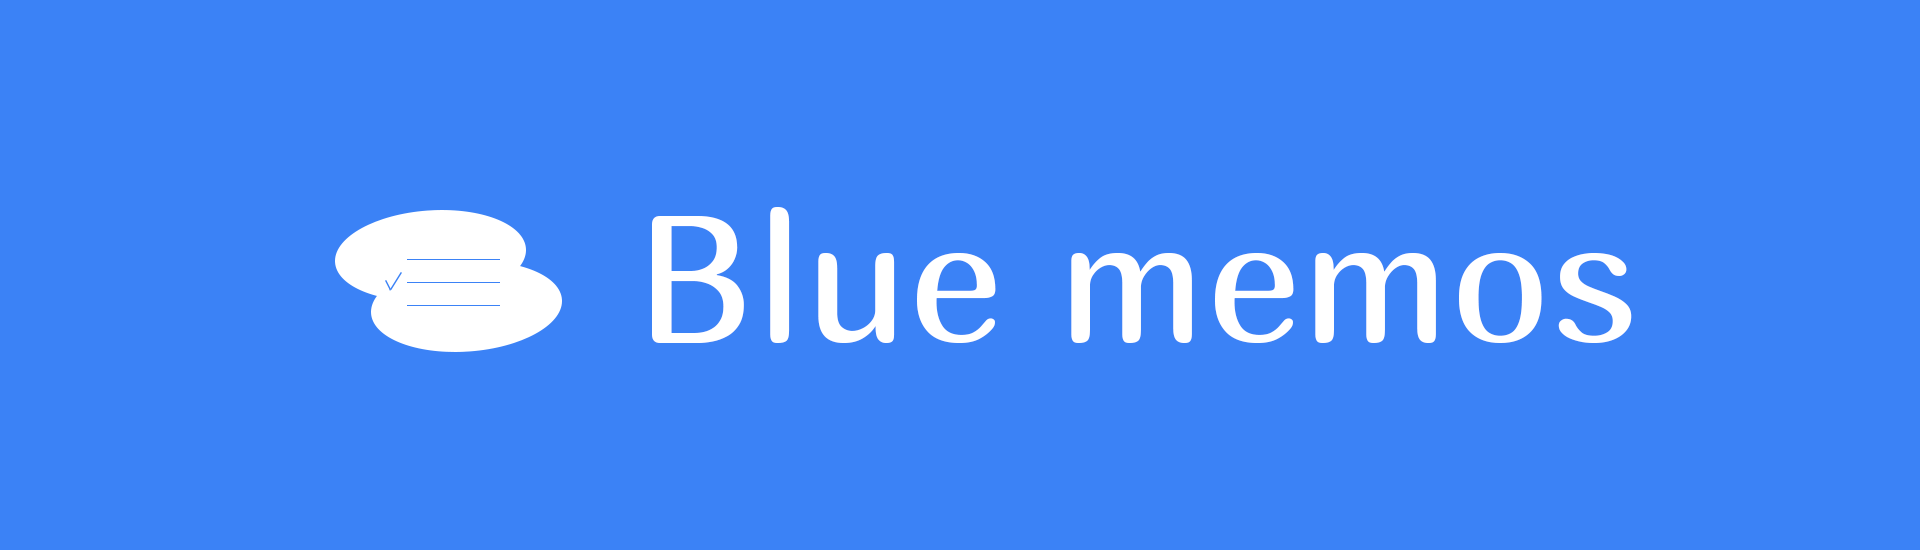 Blue memos | ブルーメモ